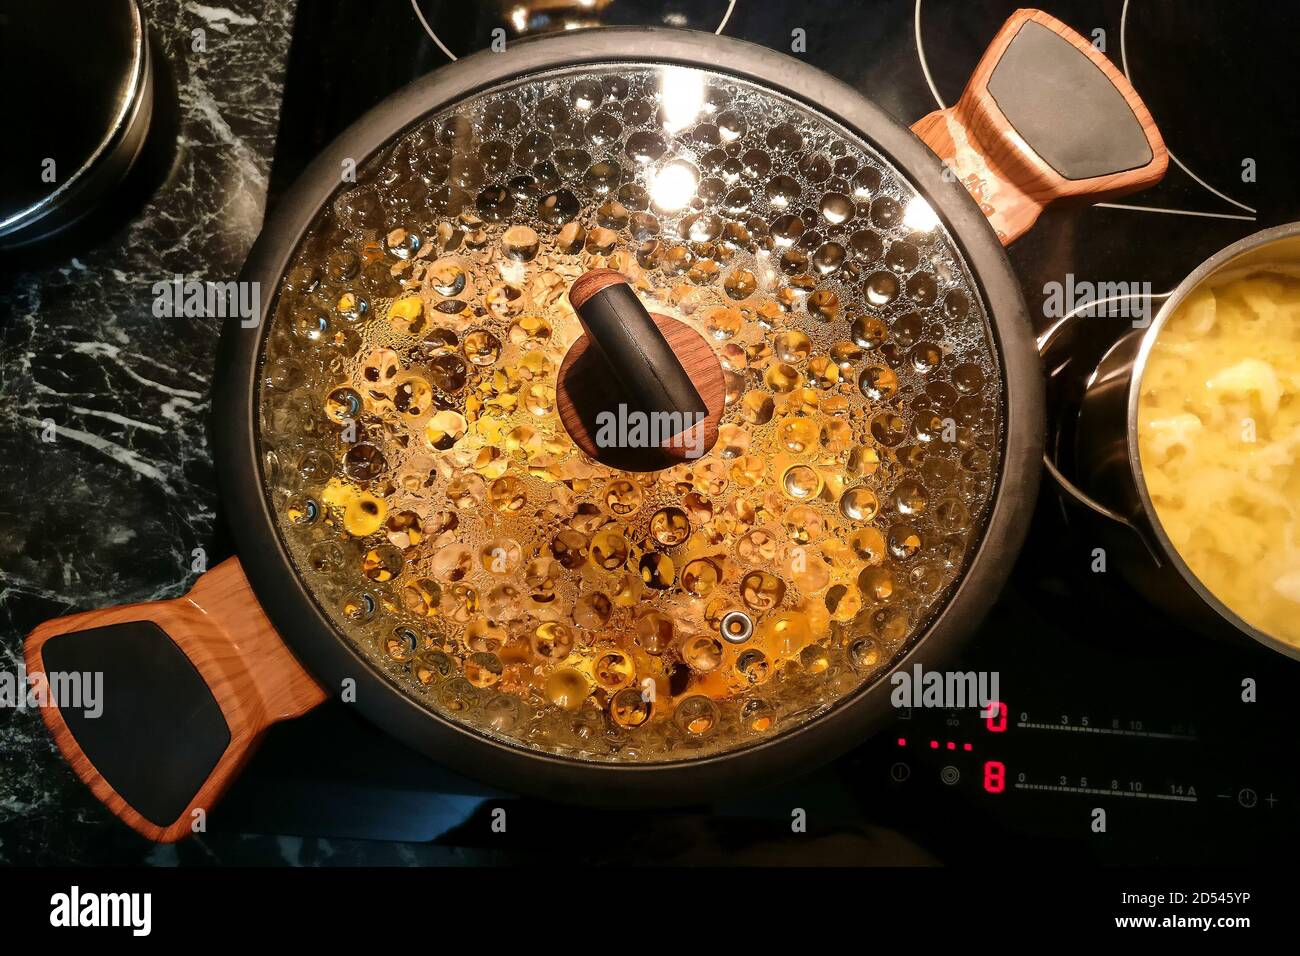 Faites une casserole sur la cuisinière avec de la condensation sur le couvercle en verre, gros plan Banque D'Images